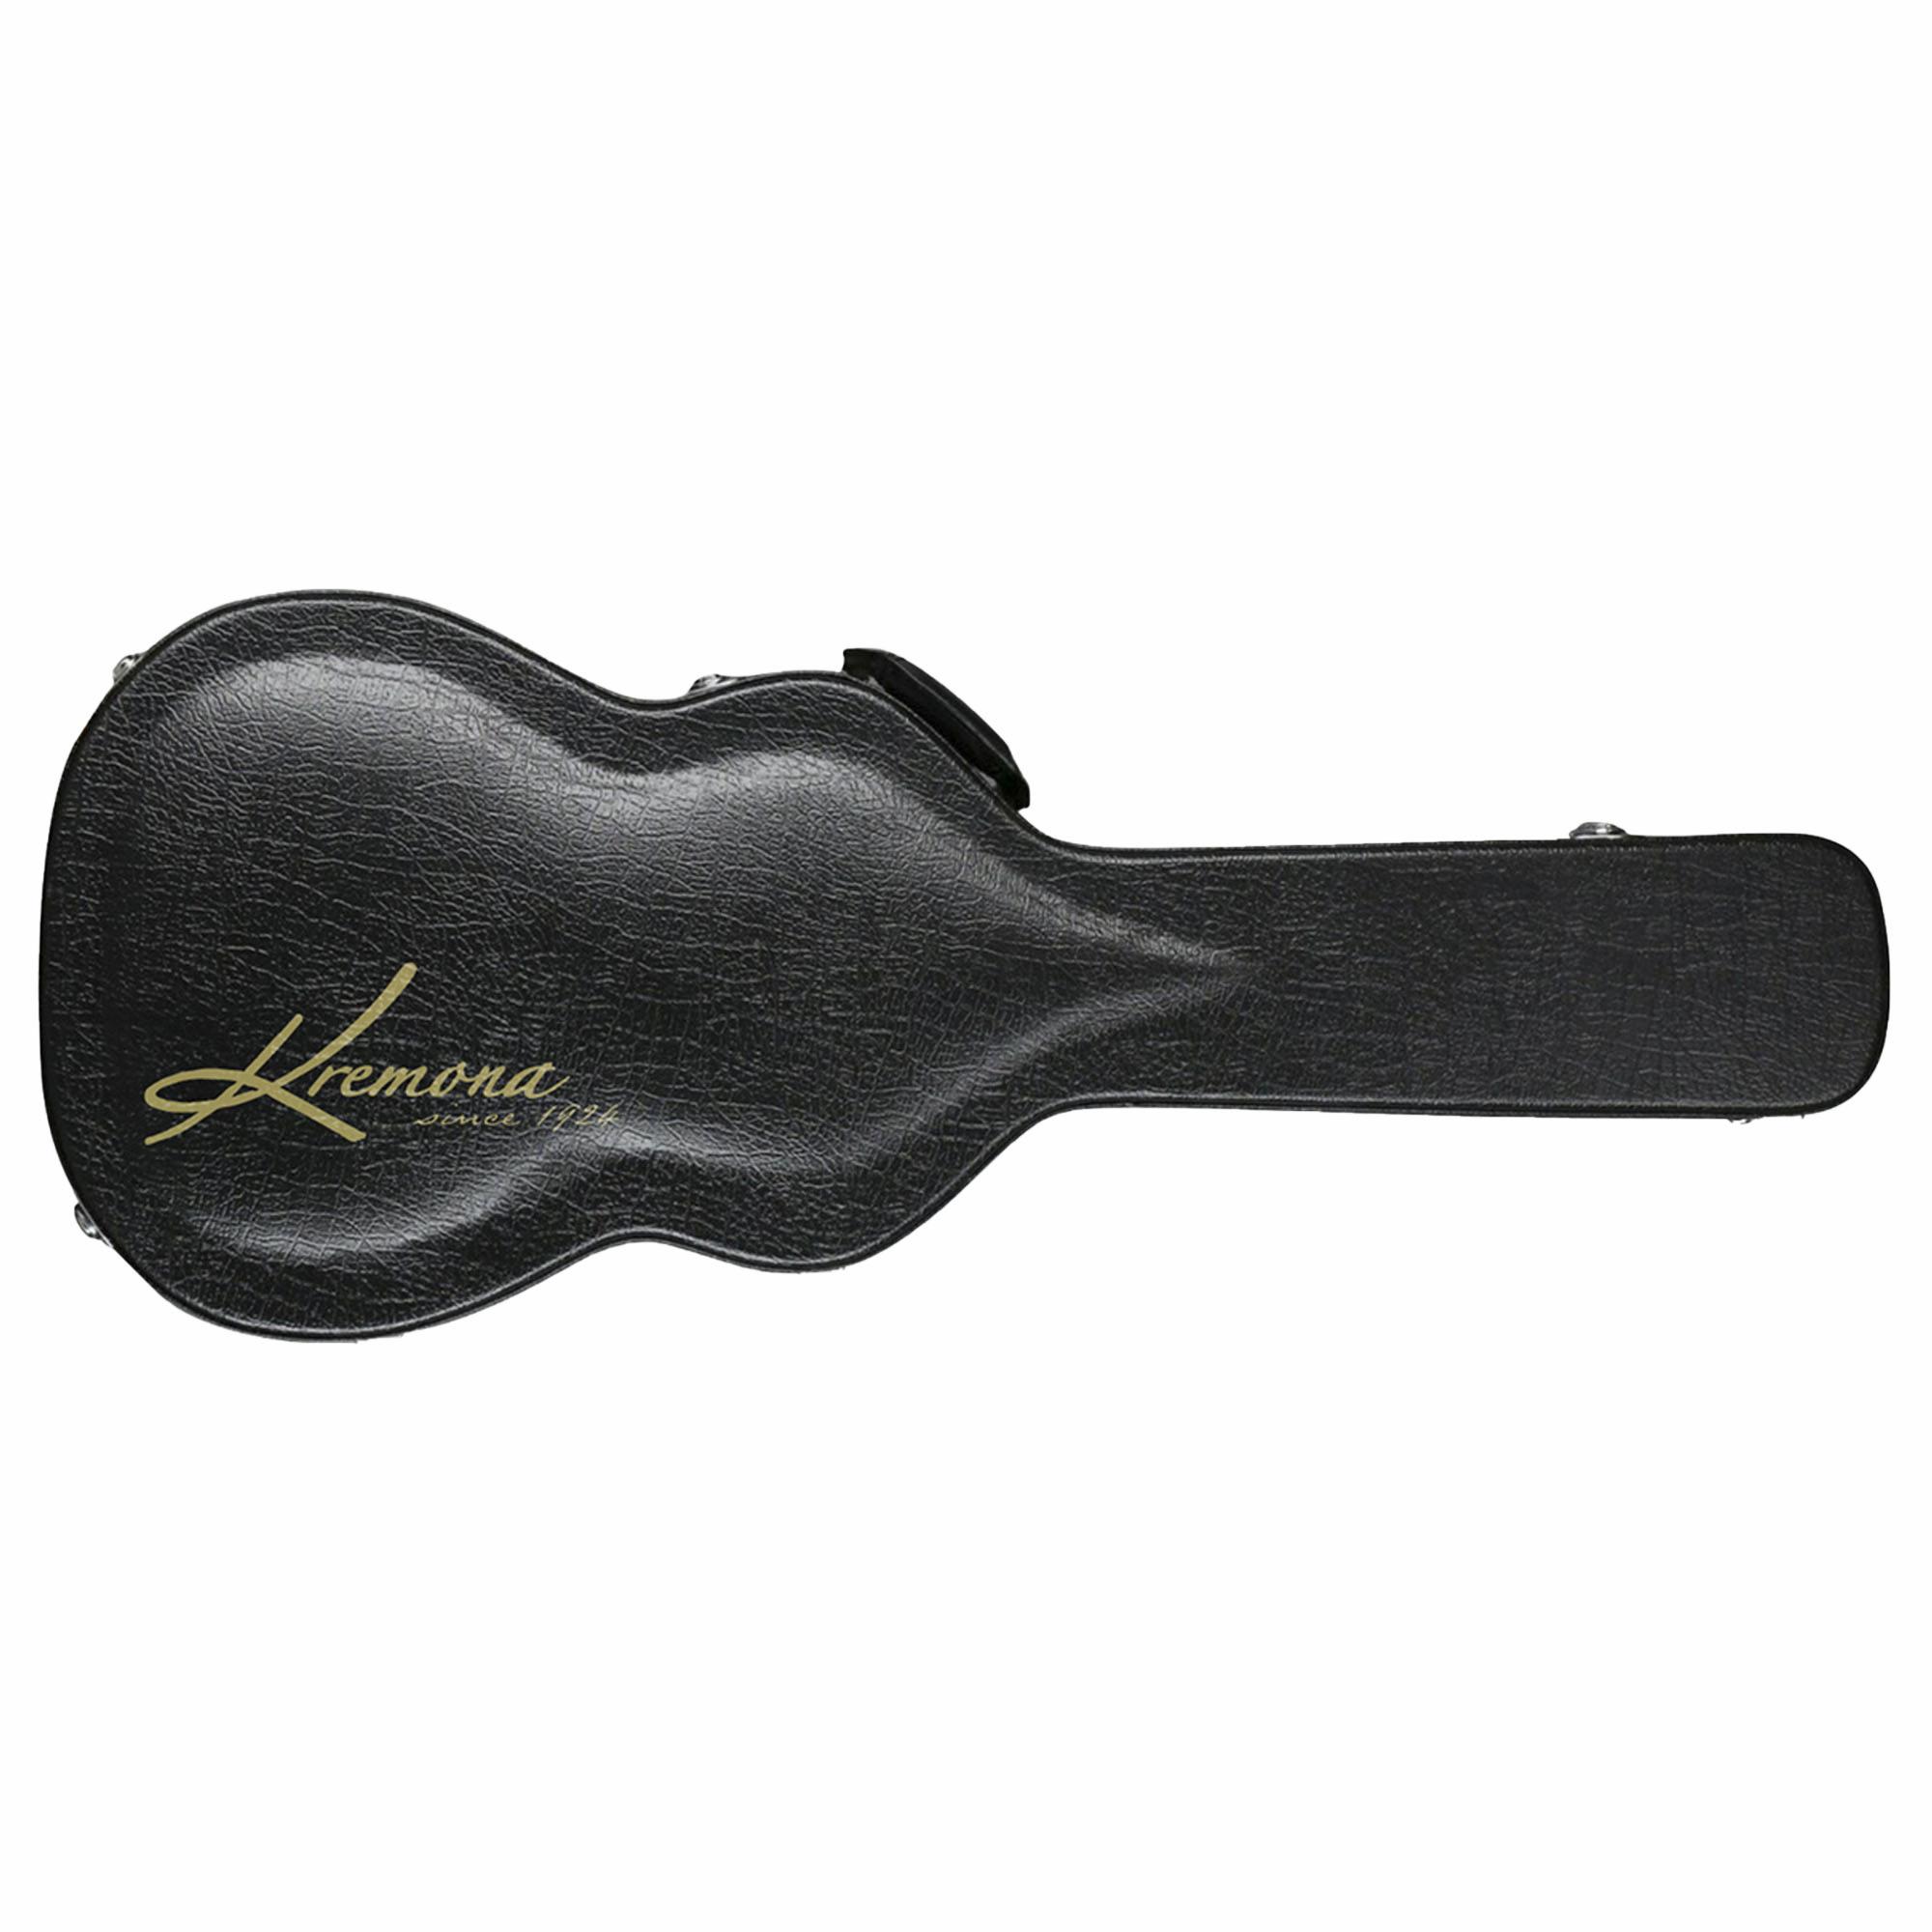 Kremona Sofia Guitar